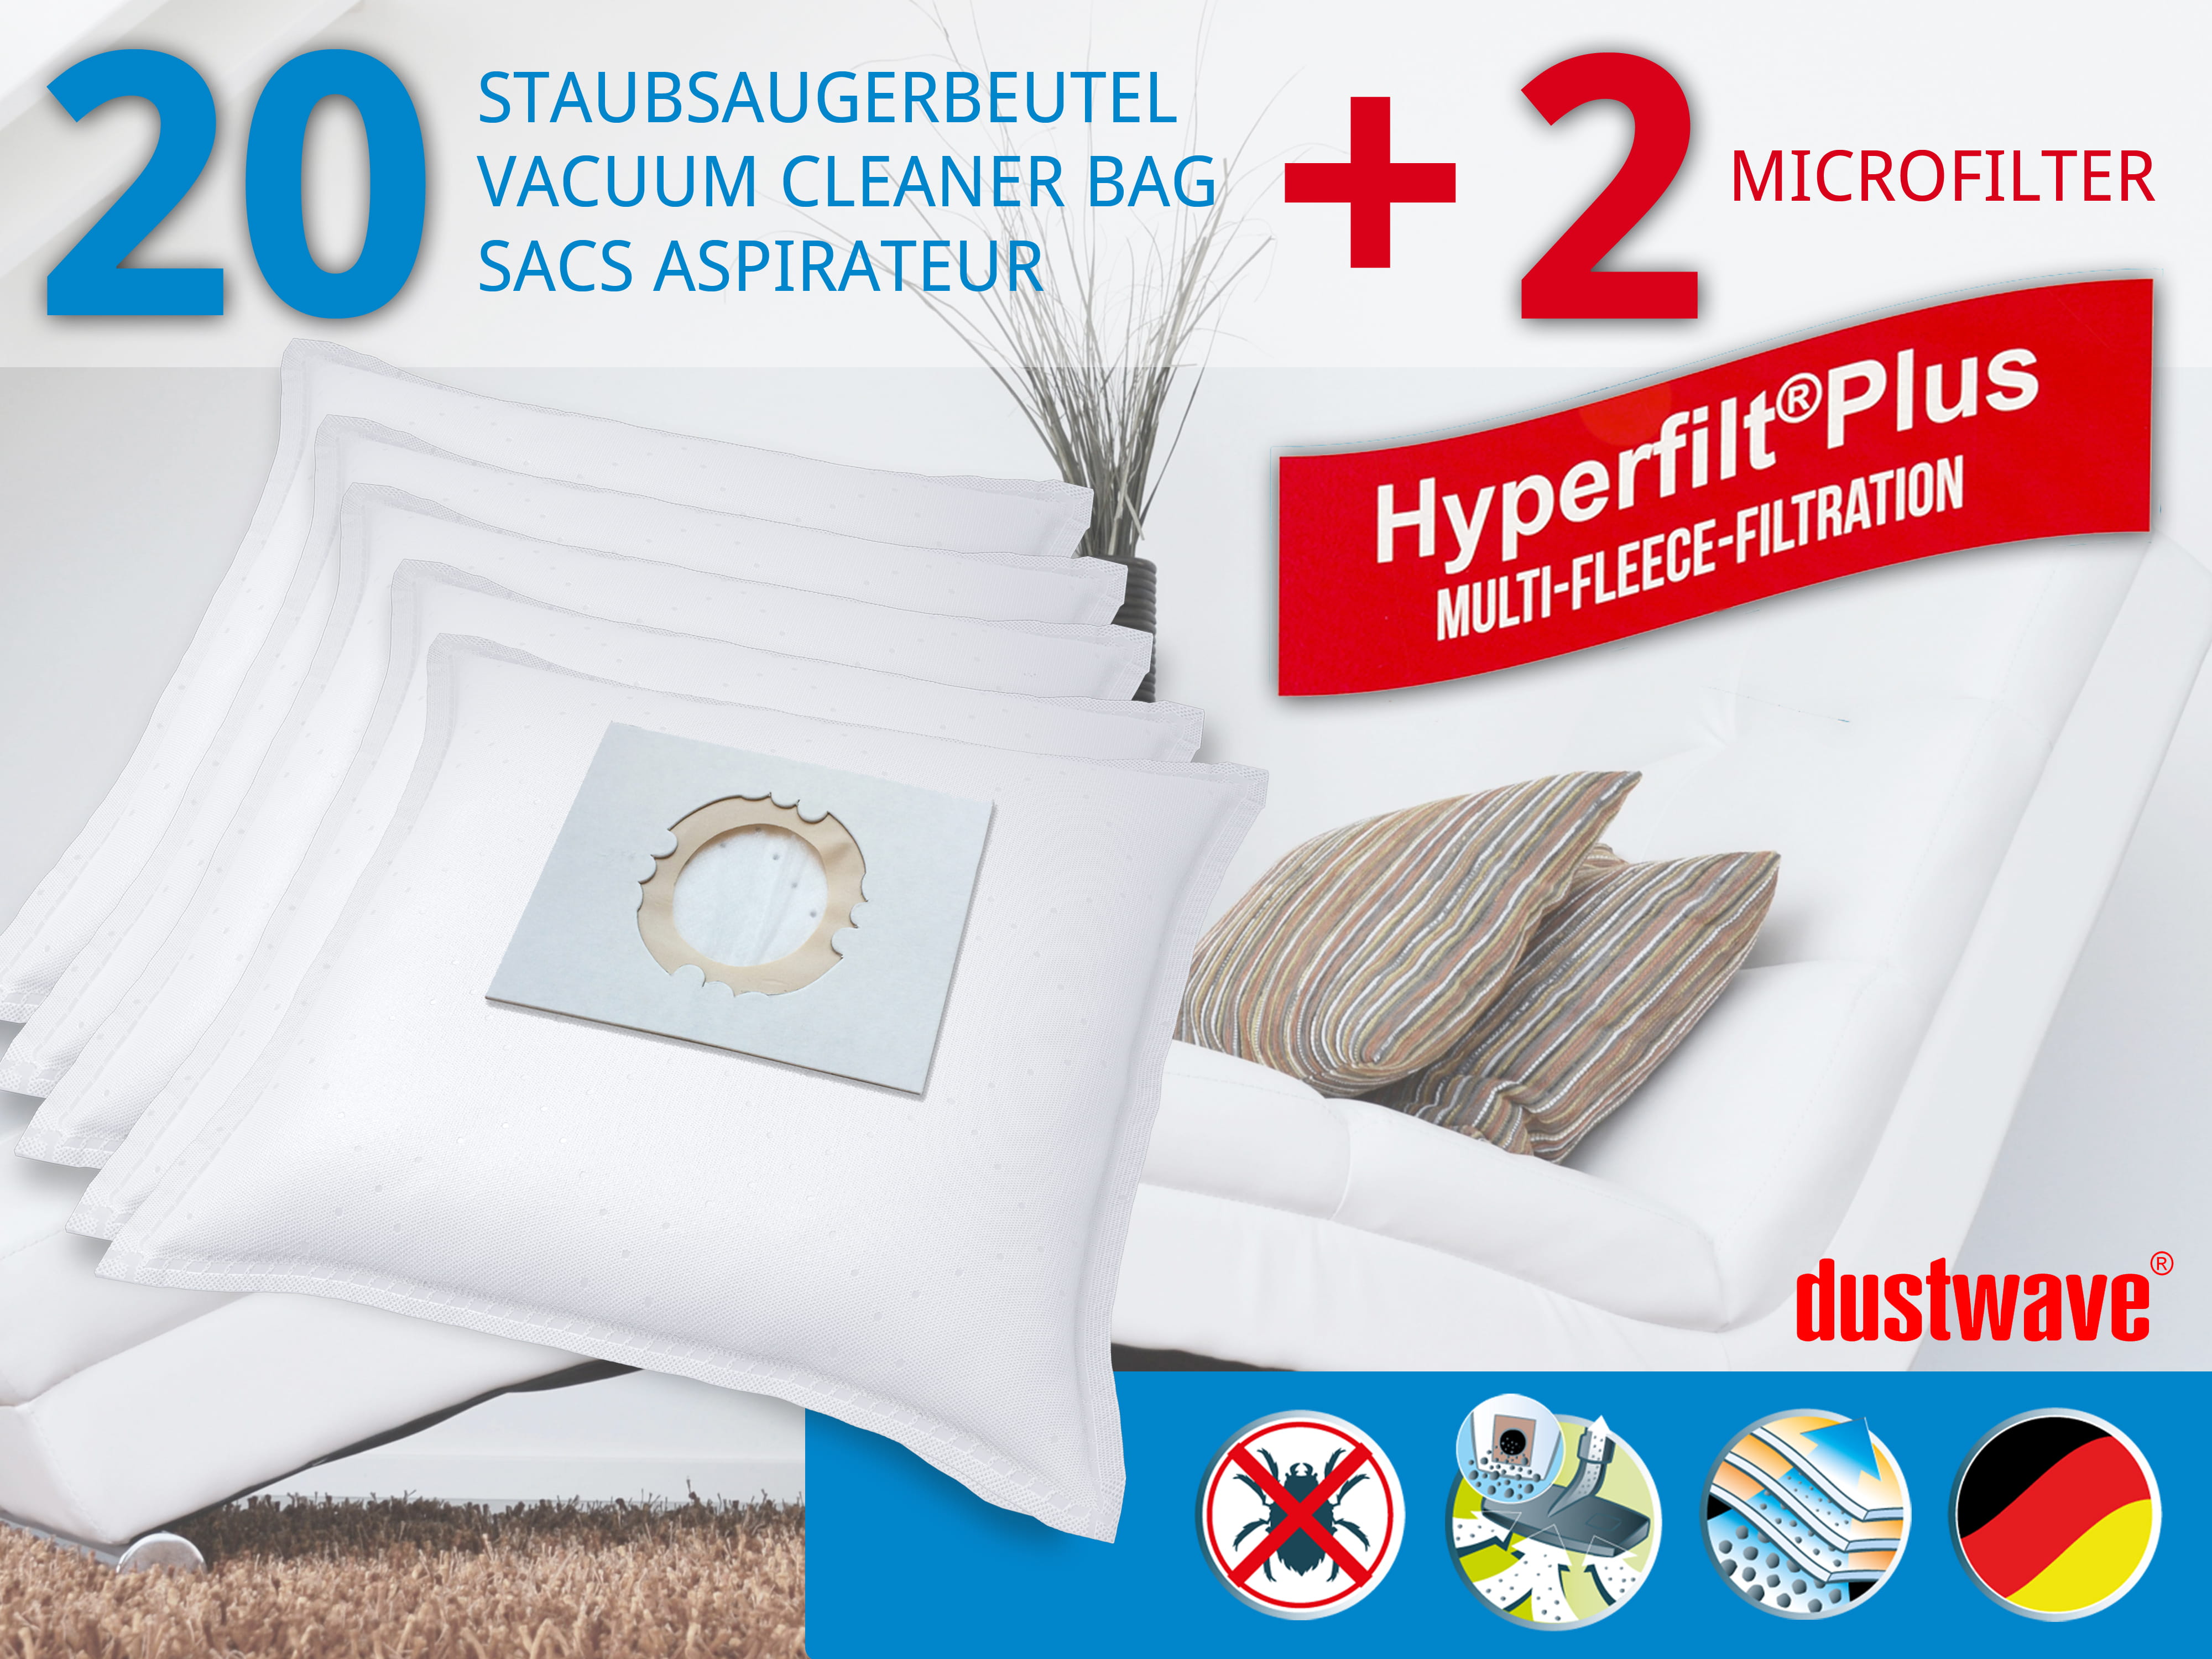 Dustwave® 20 Staubsaugerbeutel für Hoover S4474 Aqua Master - hocheffizient, mehrlagiges Mikrovlies mit Hygieneverschluss - Made in Germany